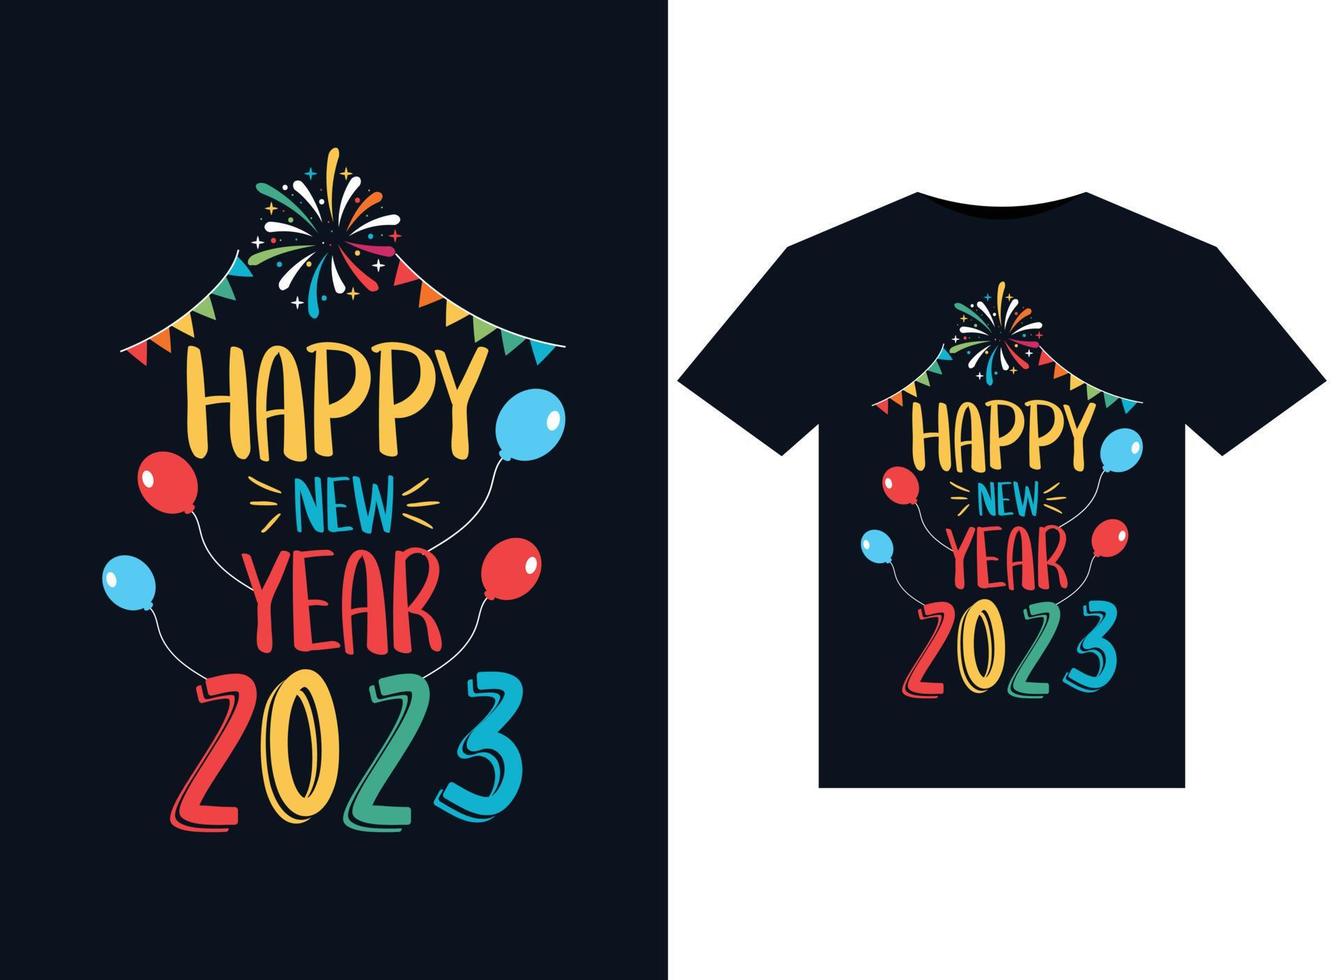 bonne année 2023 illustrations pour la conception de t-shirts prêts à imprimer vecteur